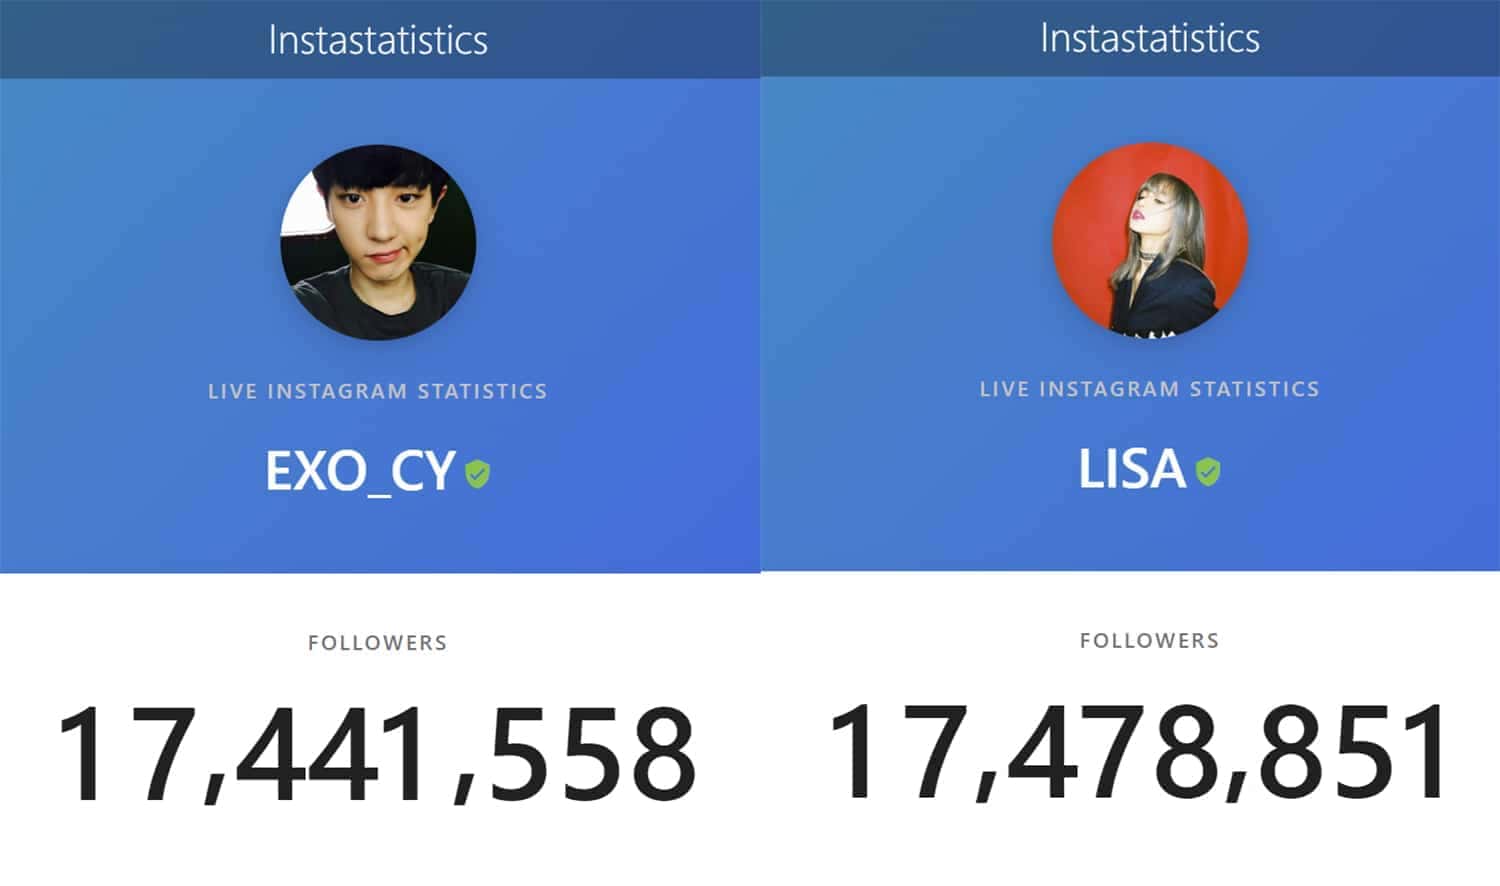 ลิซ่า BLACKPINK ขึ้นเป็นไอดอลที่มีผู้ติดตามมากที่สุดในเกาหลี!!! 3